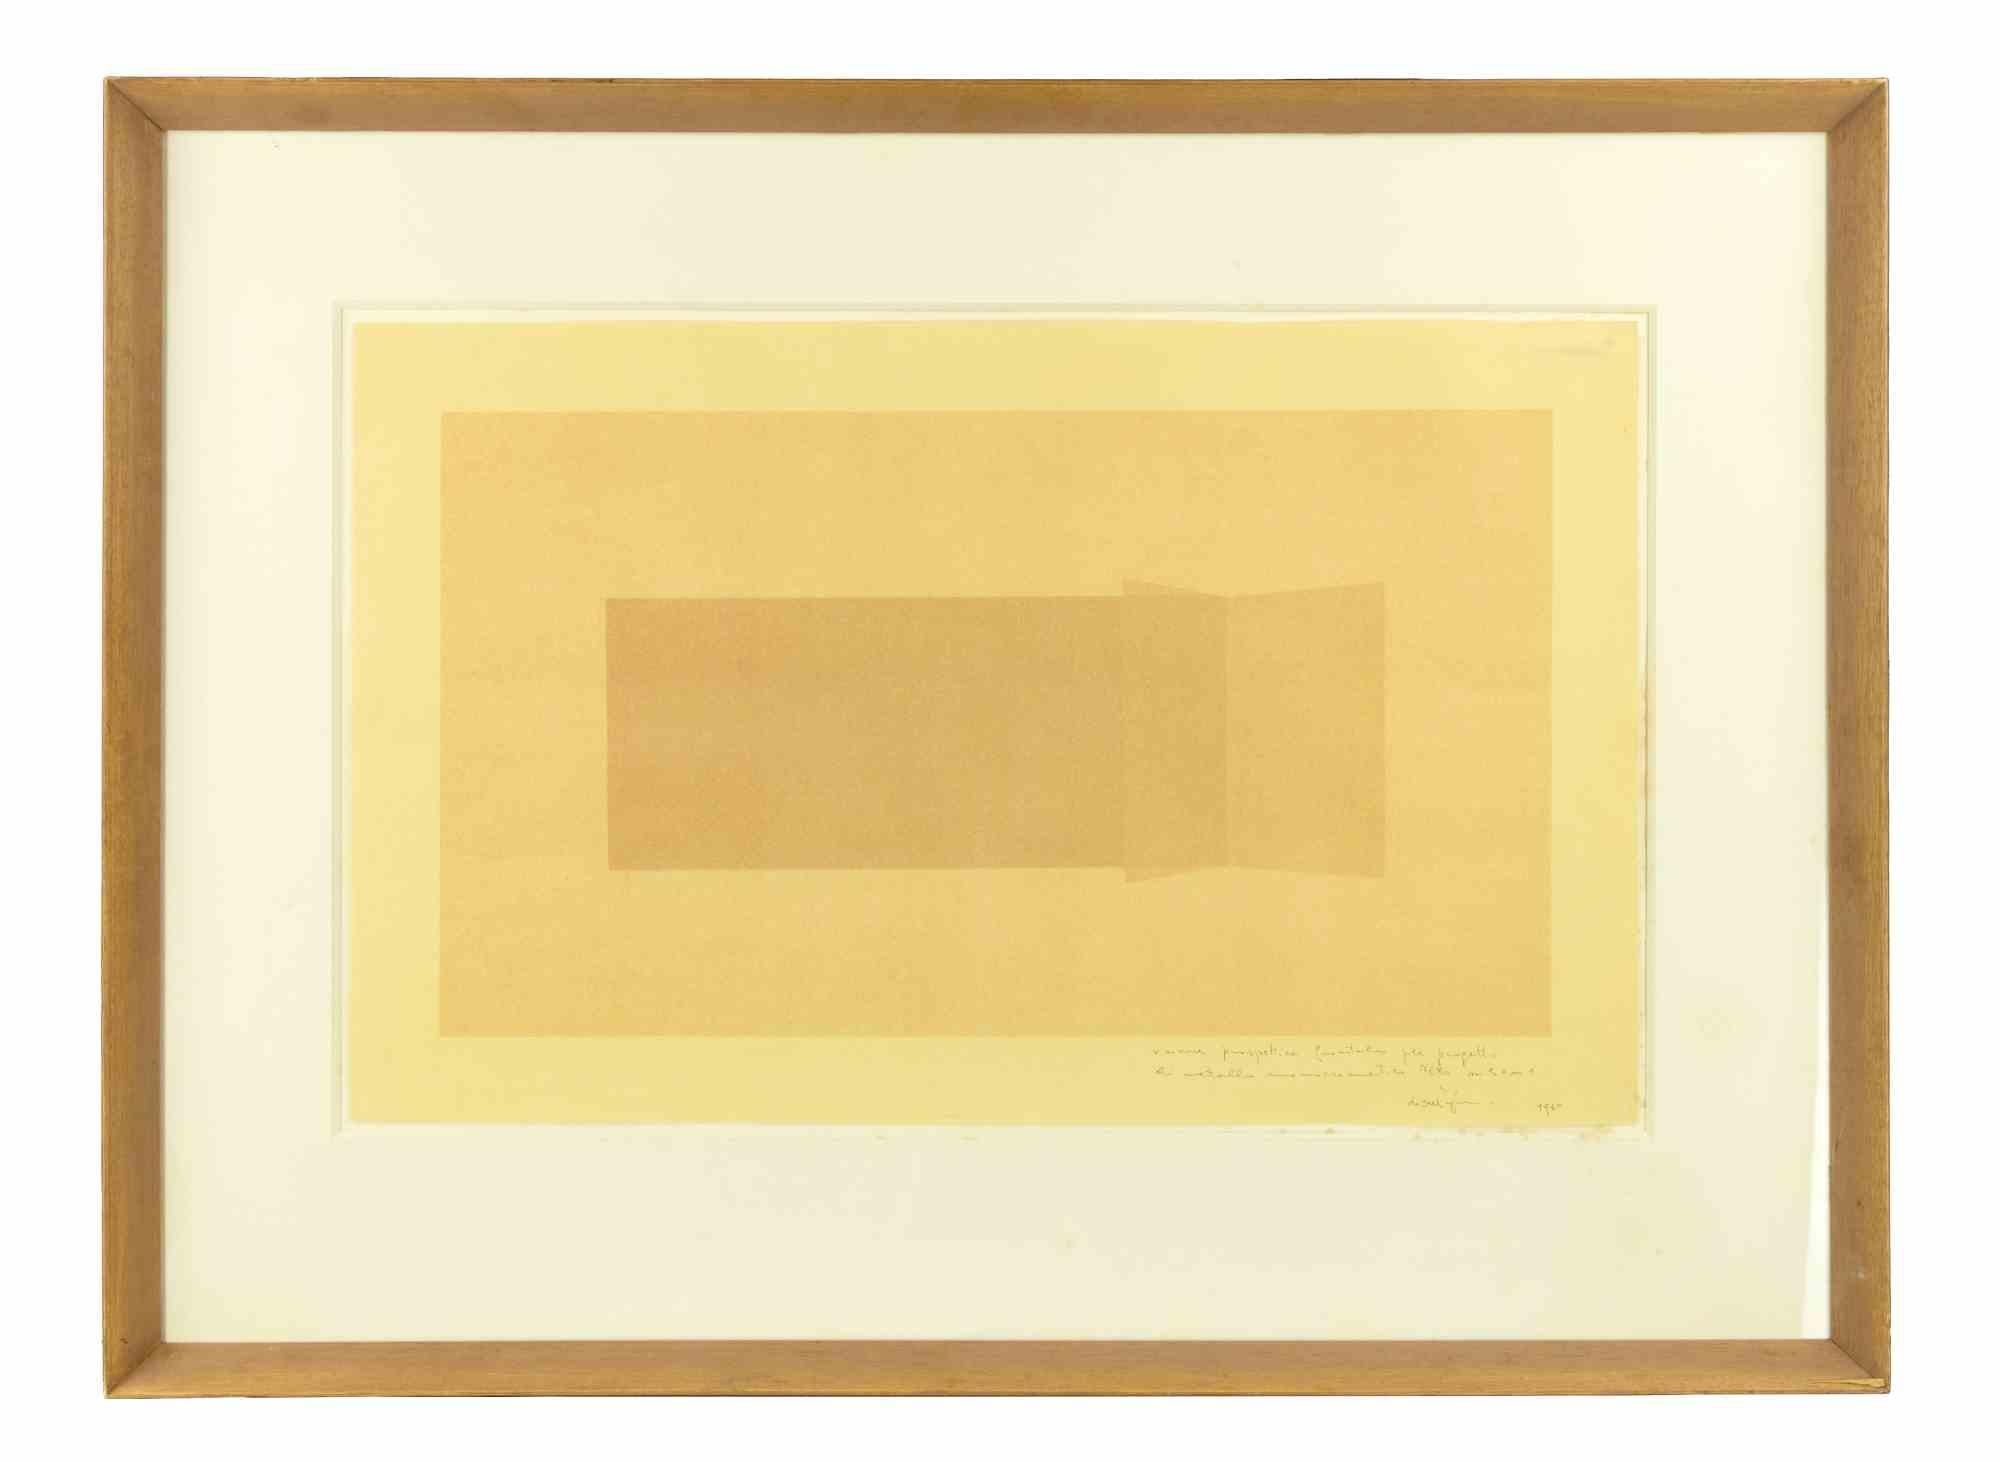 Francesco Lo Savio Abstract Print - Frontal Perspective Vision - Original Monotype by F. Lo Savio - 1979